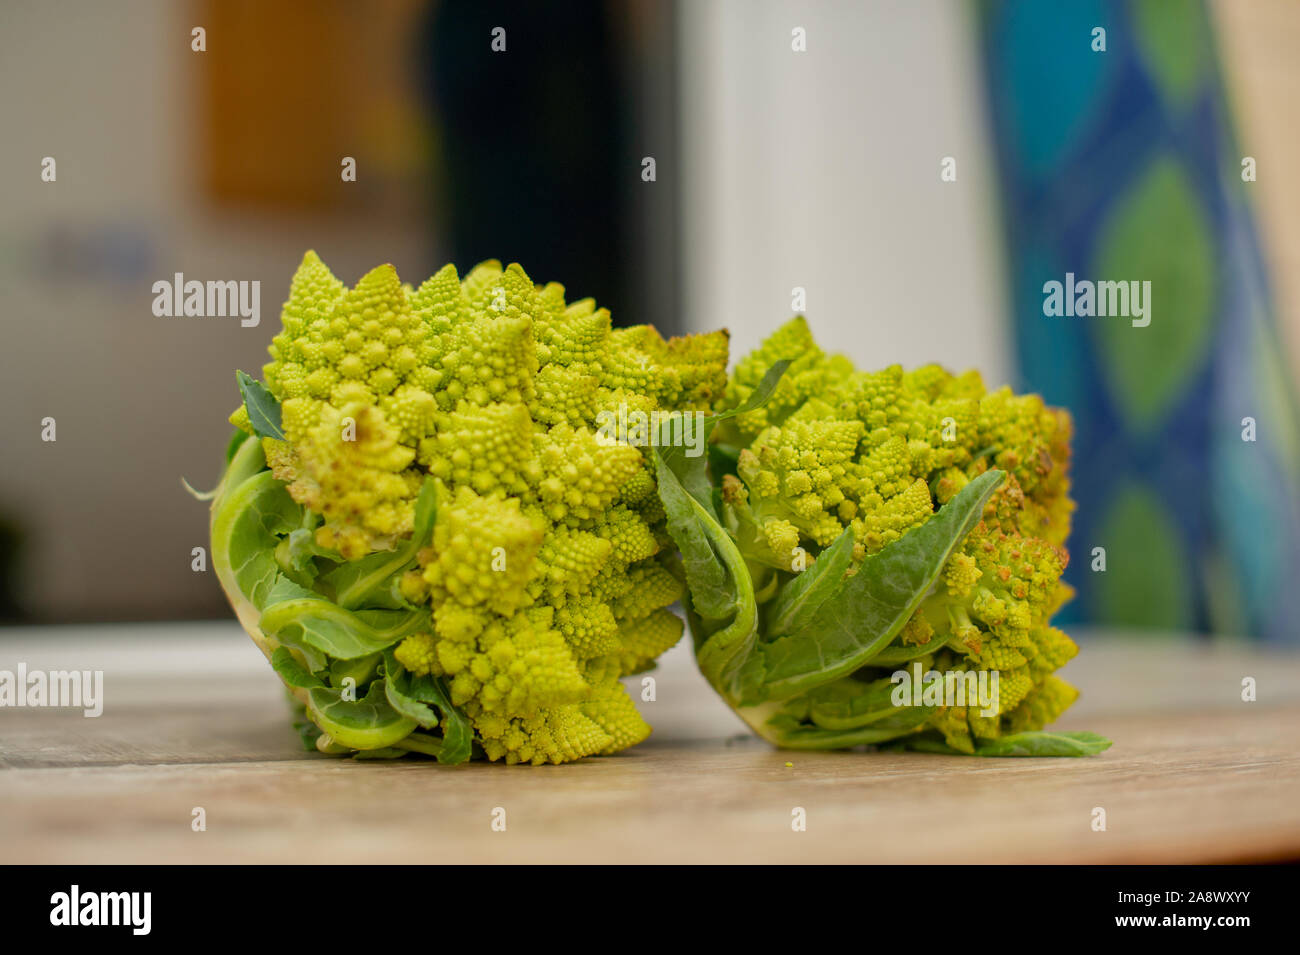 Les légumes, de l'alimentation et concept culinaire - close up de brocoli romanesco. Le brocoli Romanesco, chou-fleur ou romain. Le brocoli sur une table en bois. Banque D'Images